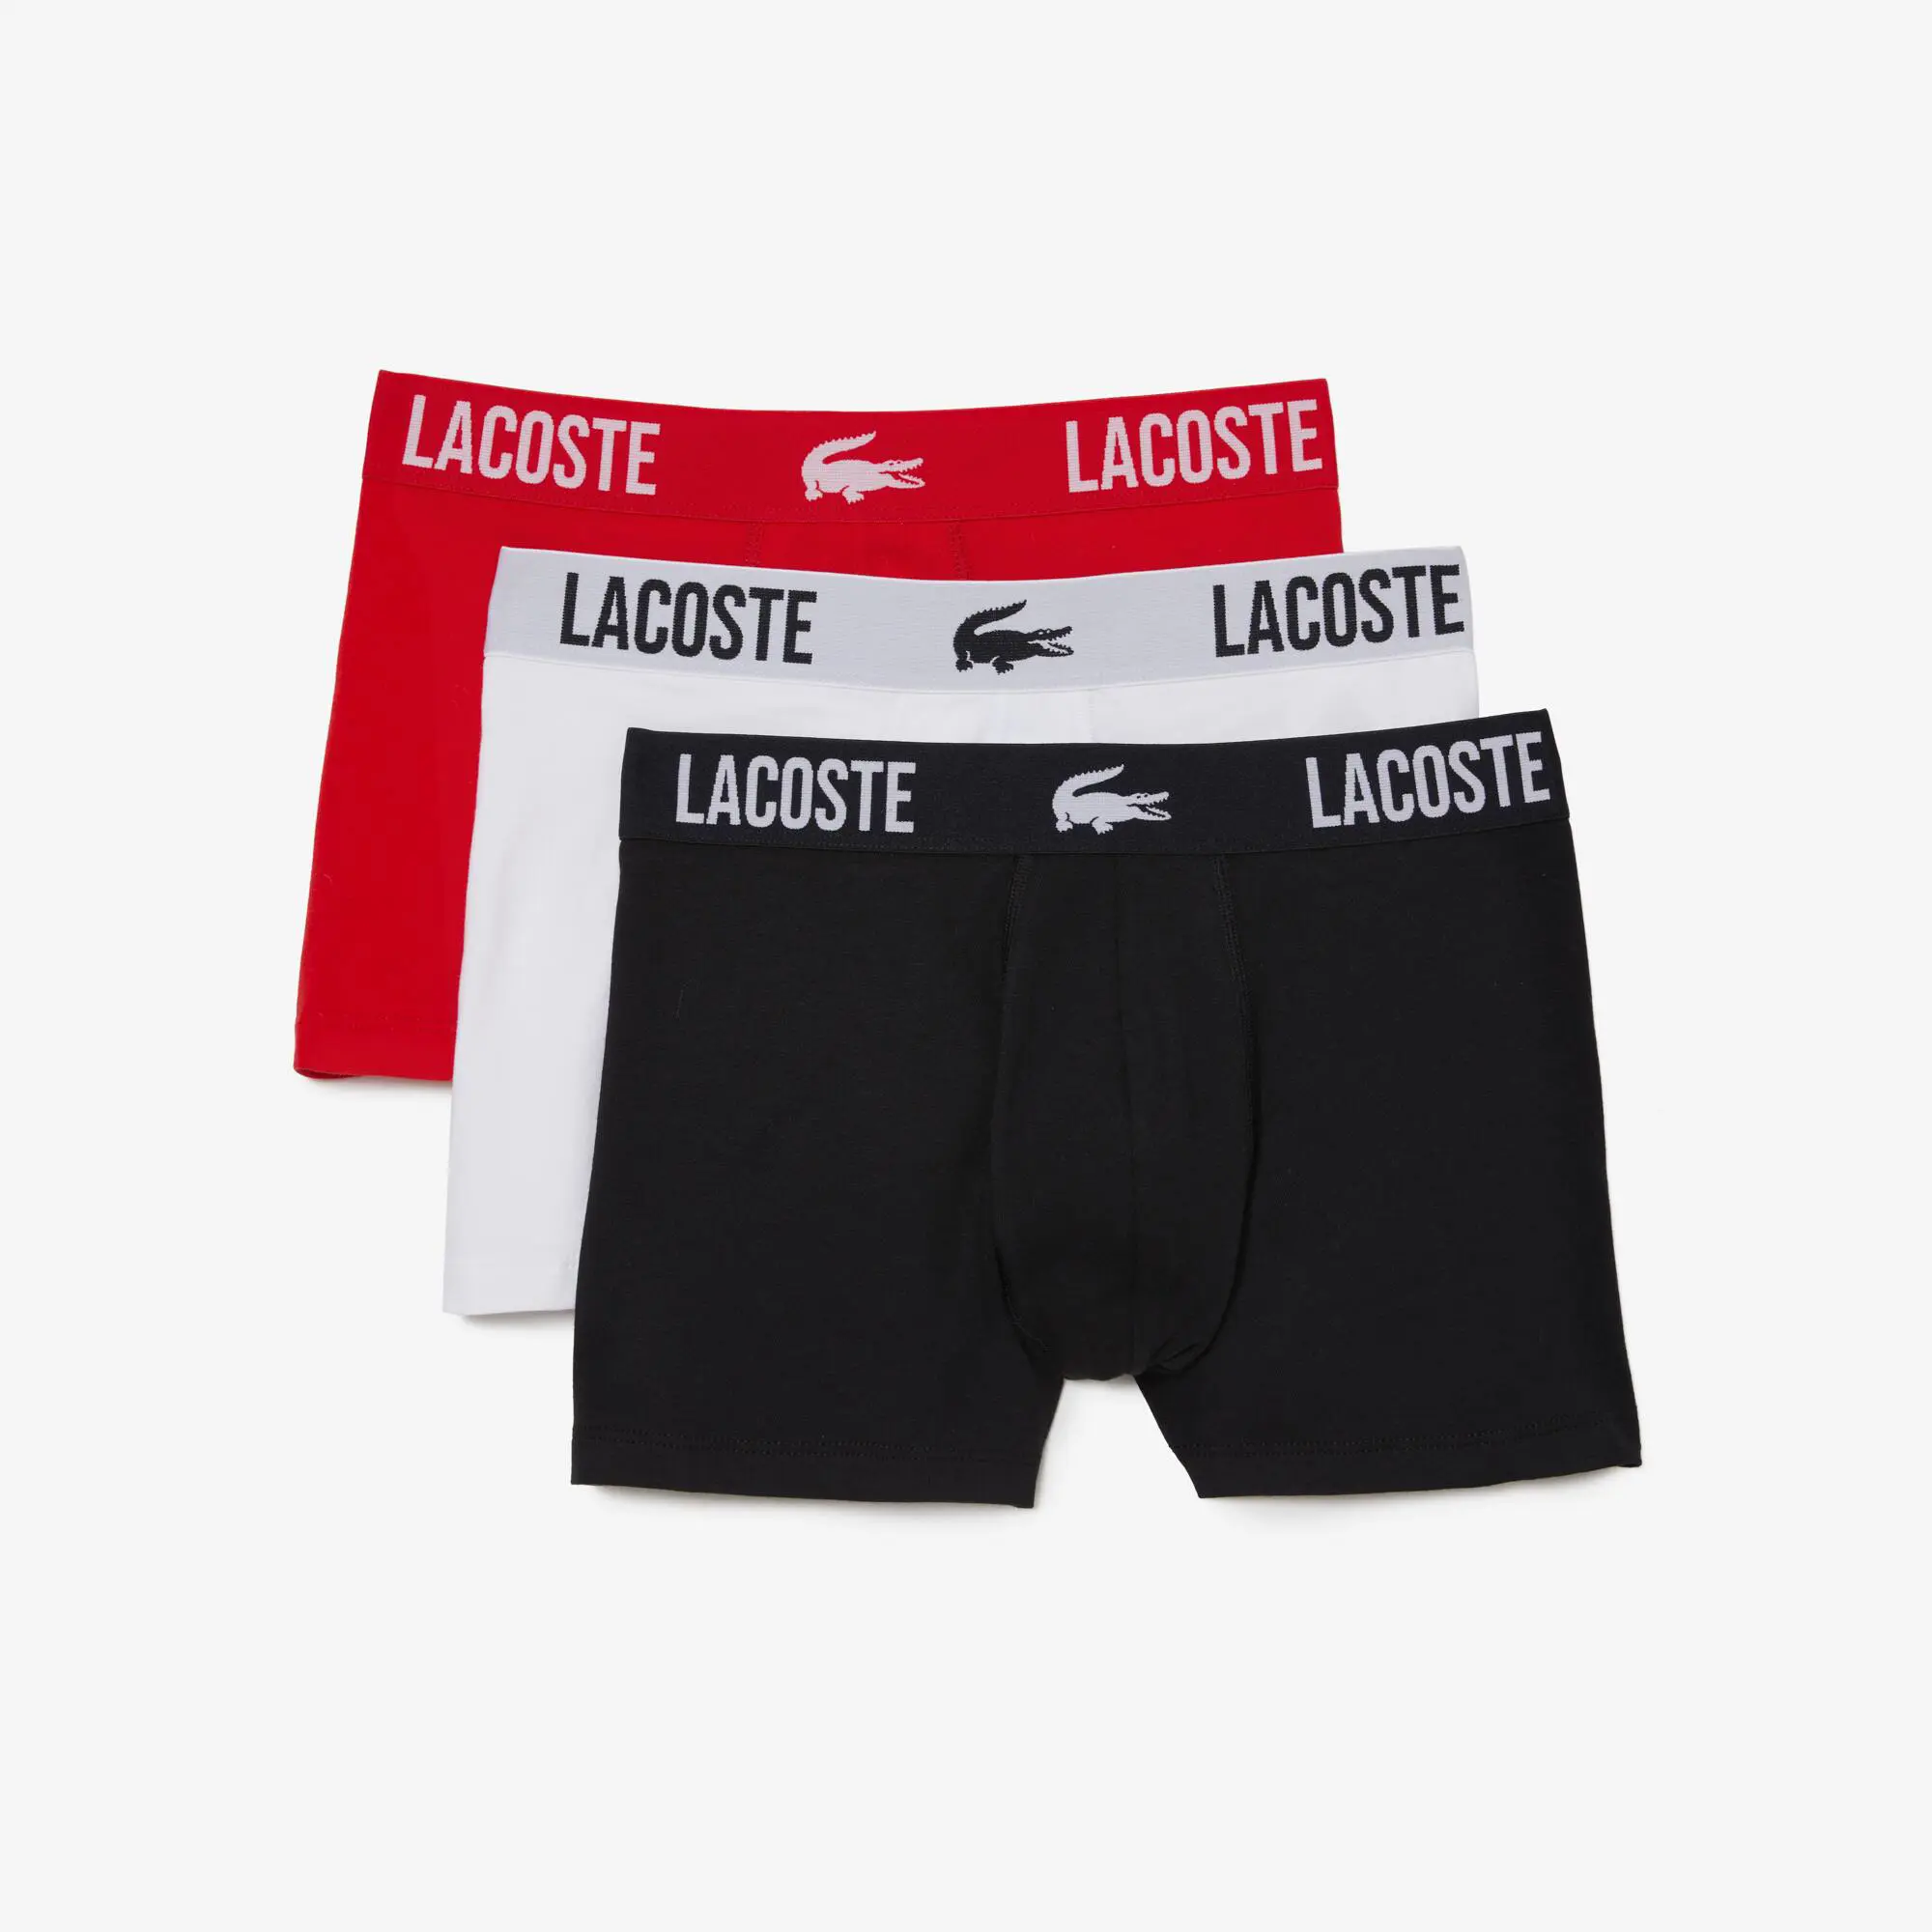 Lacoste Pack de tres calzoncillos de hombre Lacoste en tejido de punto con detalle de la marca. 2